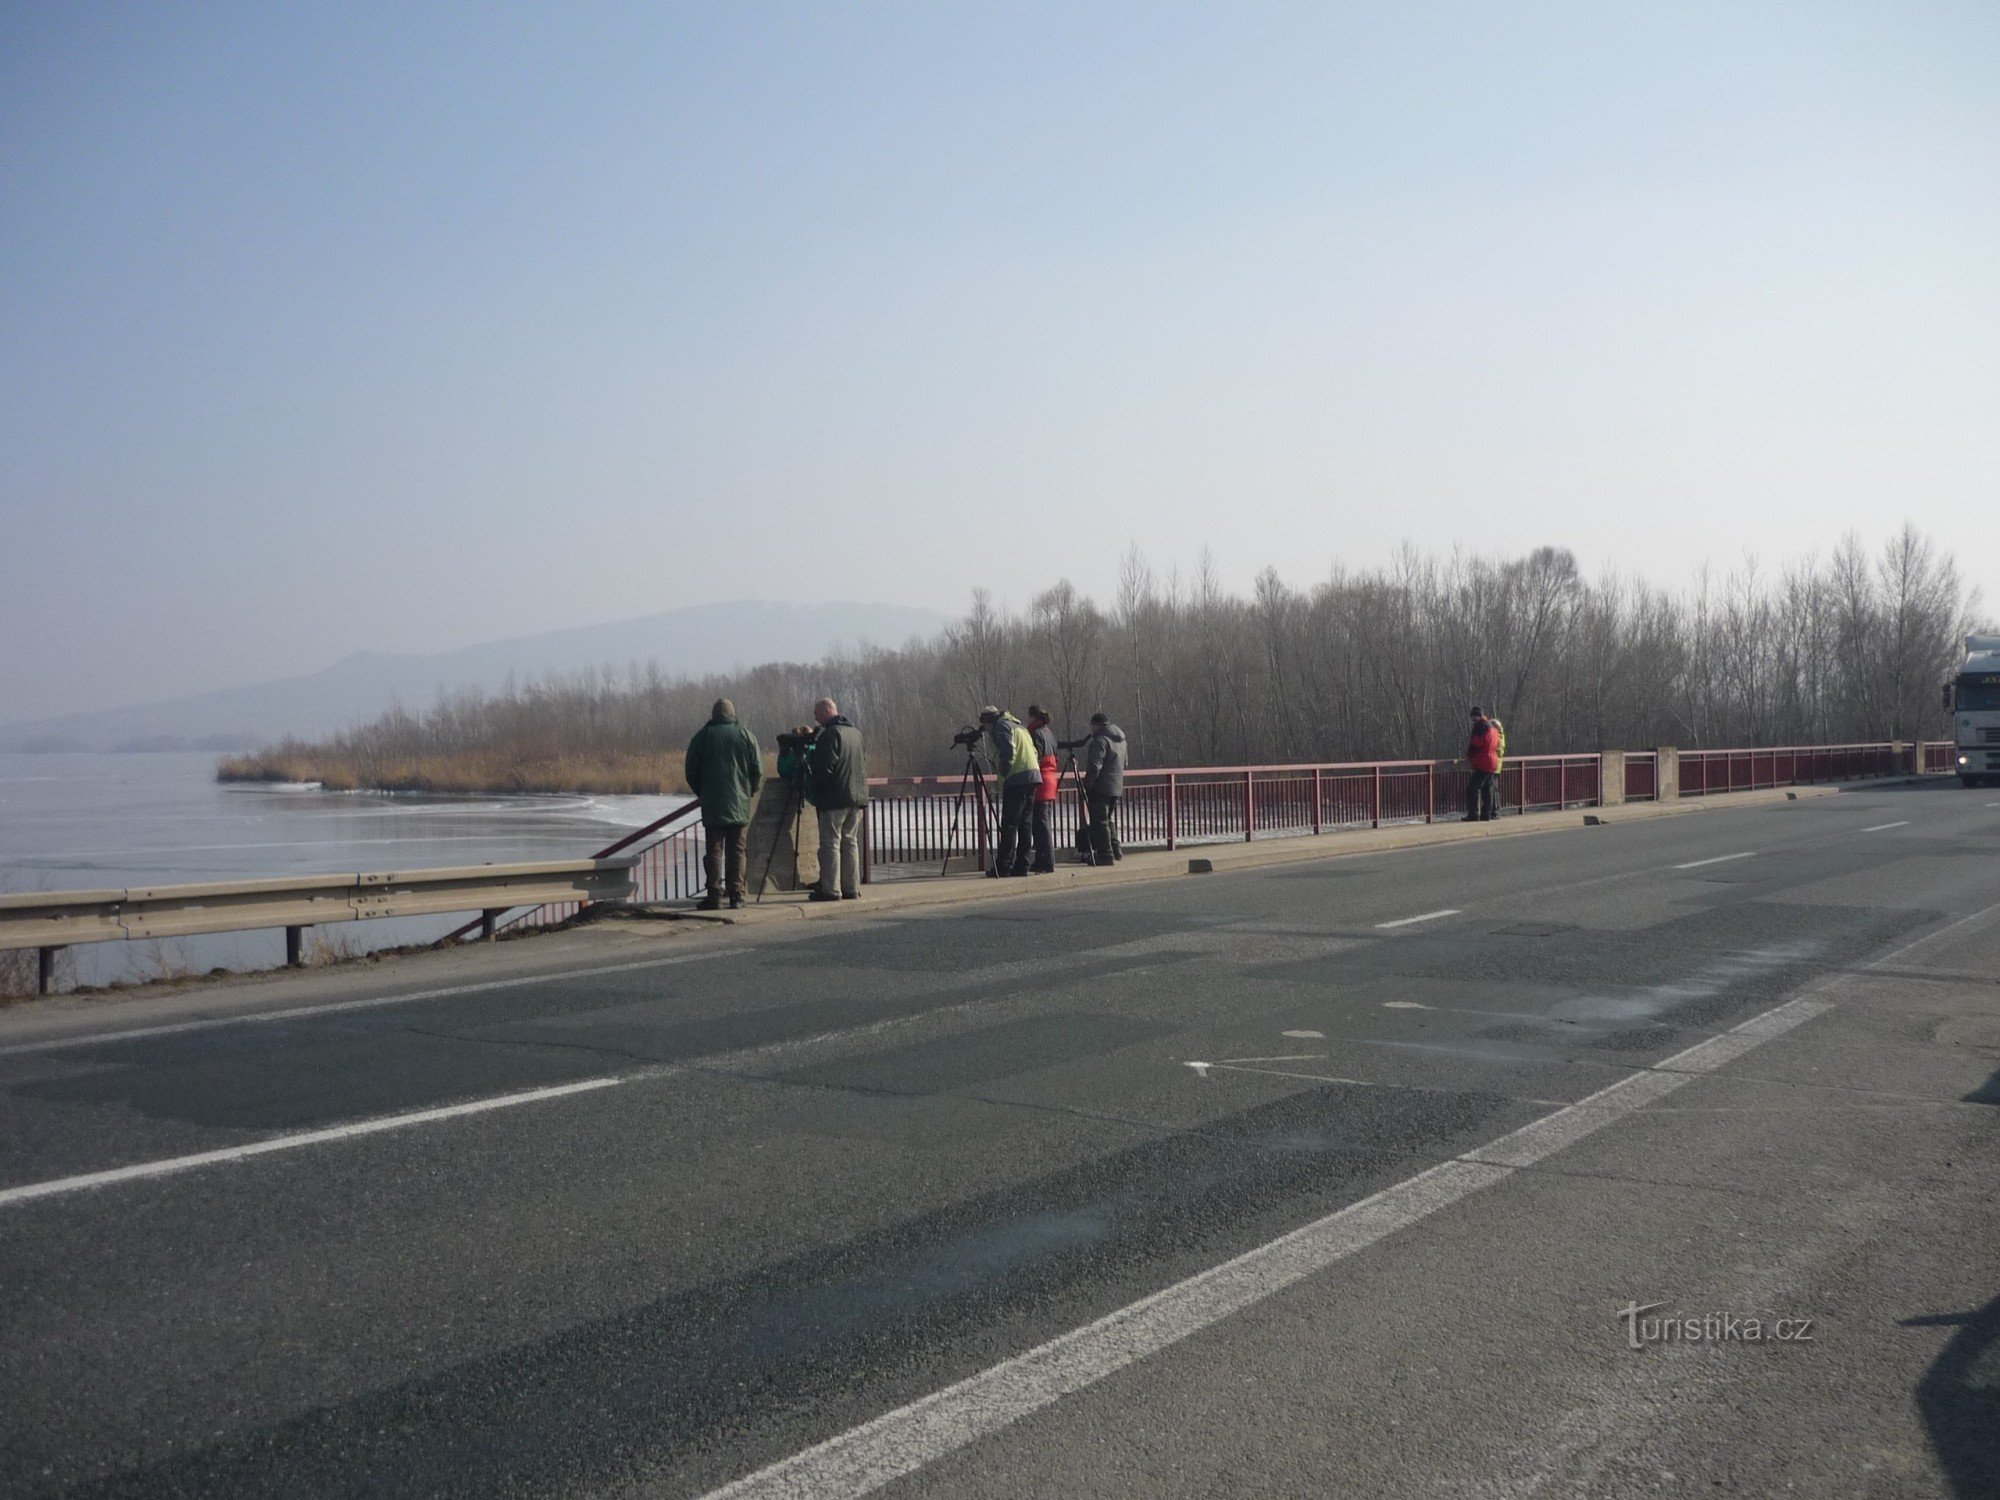 Observatører ved Novomlýn Reservoirs